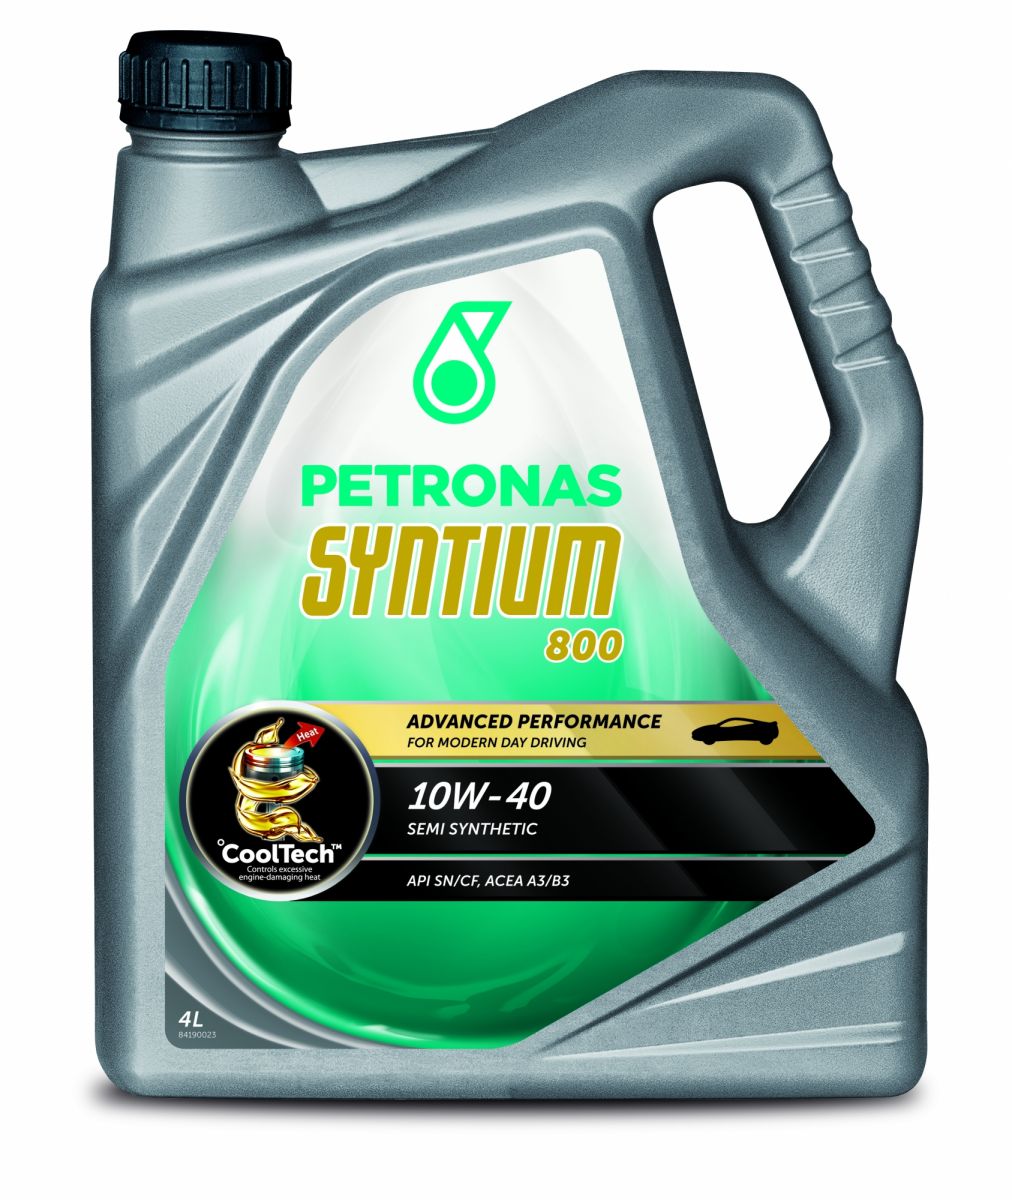 Petronas Syntium 800 10W-40